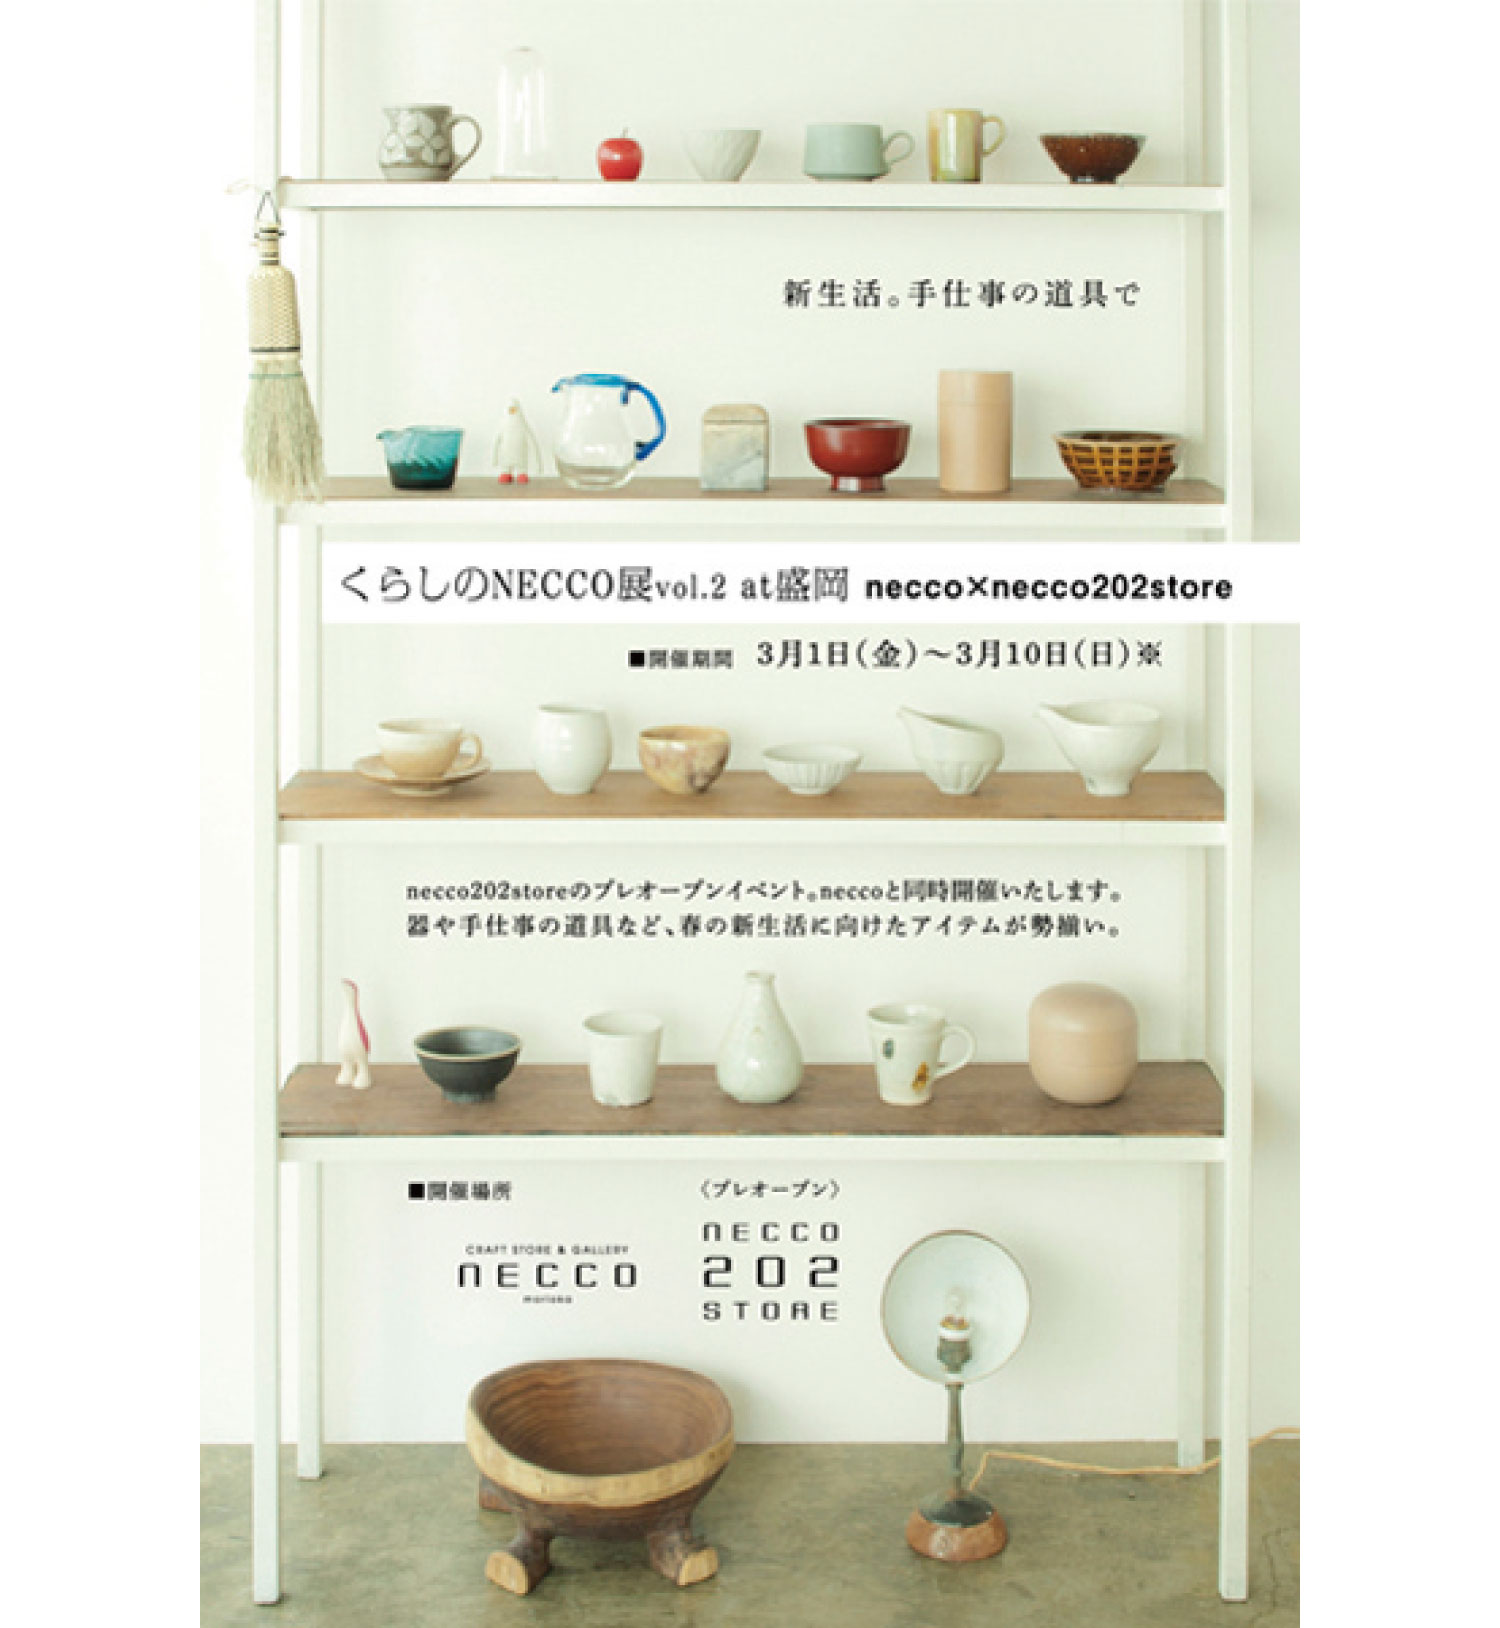 craft store＆gallery necco Kurashi no necco ten at MORIOKA Flyer